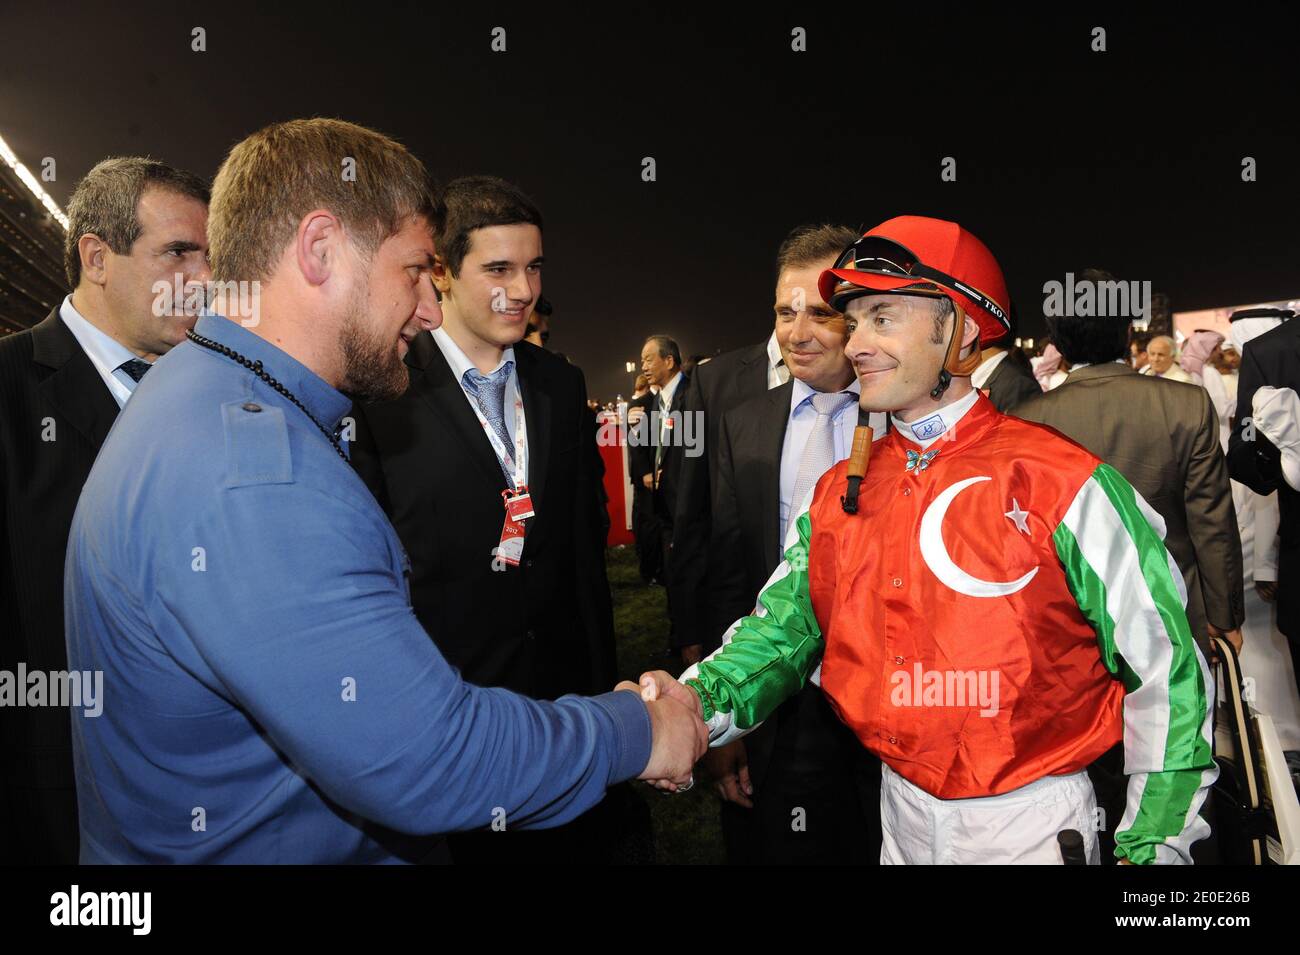 Tschetscheniens Präsident Ramzan Kadyrov und der französische Jockey Olivier Peslier sahen sich während des Dubai World Cup Pferderennens am 31. März 2012 in Dubai, Vereinigte Arabische Emirate, an. Foto von Ammar Abd Rabbo/ABACAPRESS.COM Stockfoto